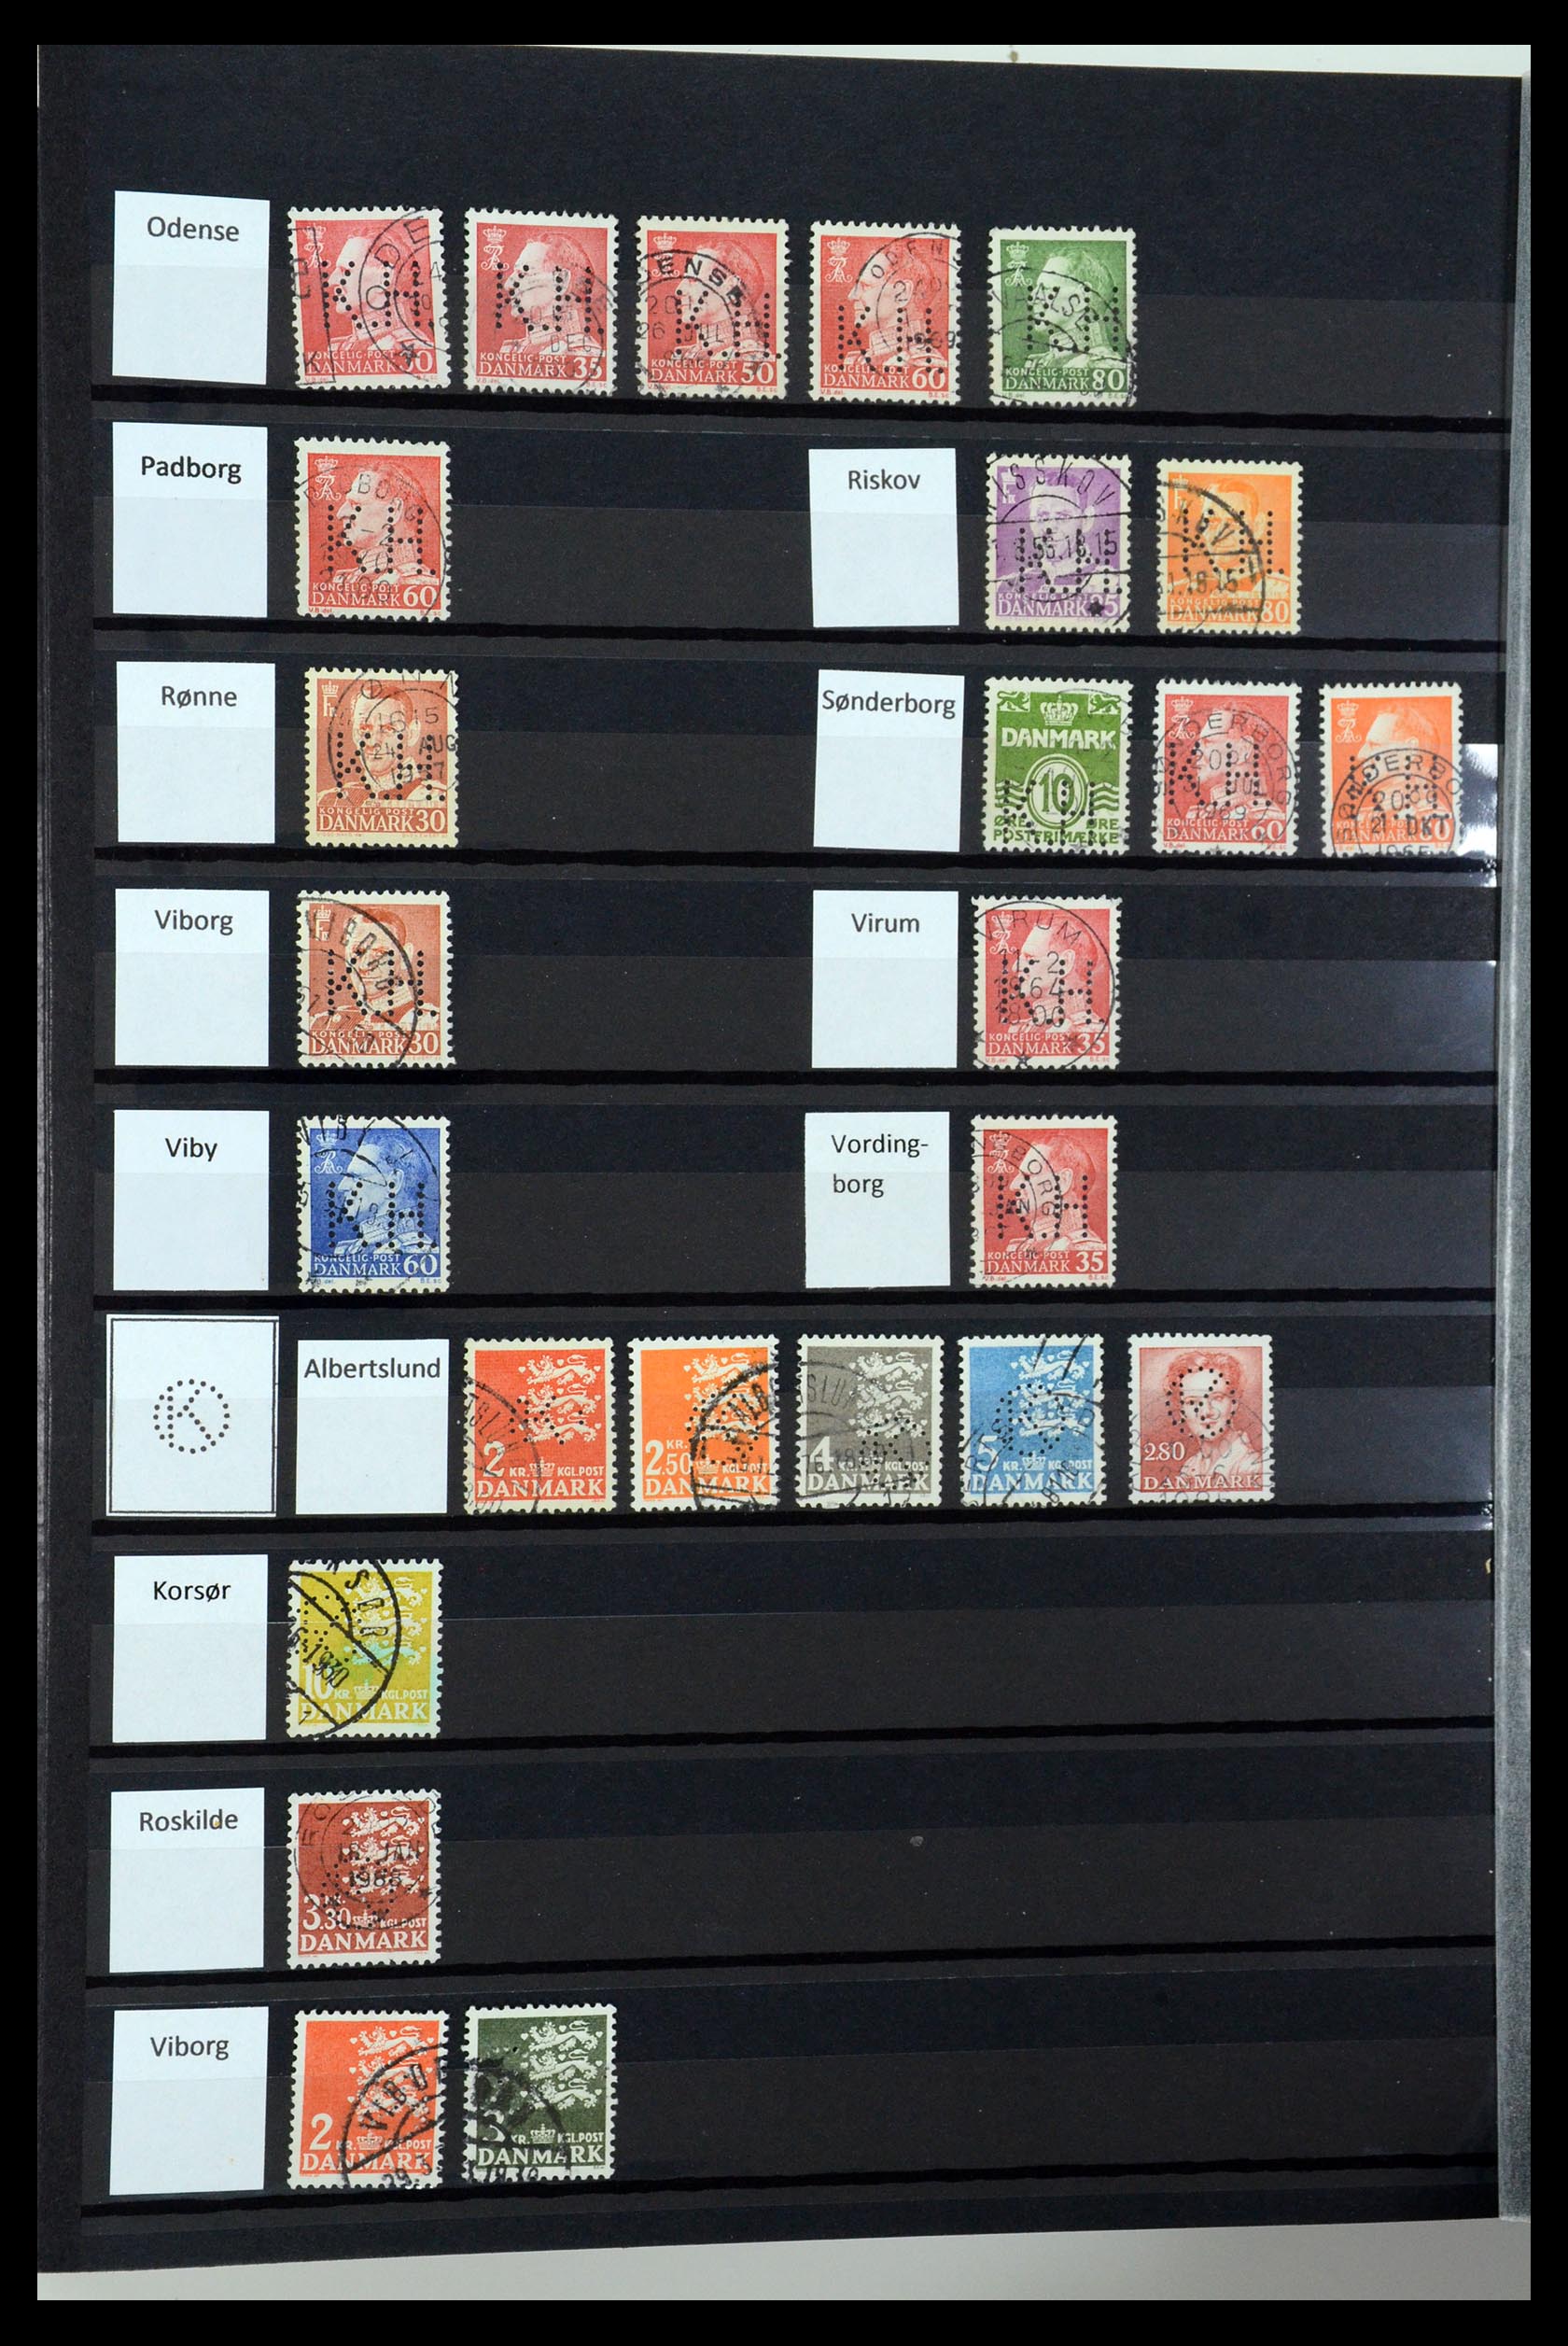 36396 085 - Postzegelverzameling 36396 Denemarken perfins.